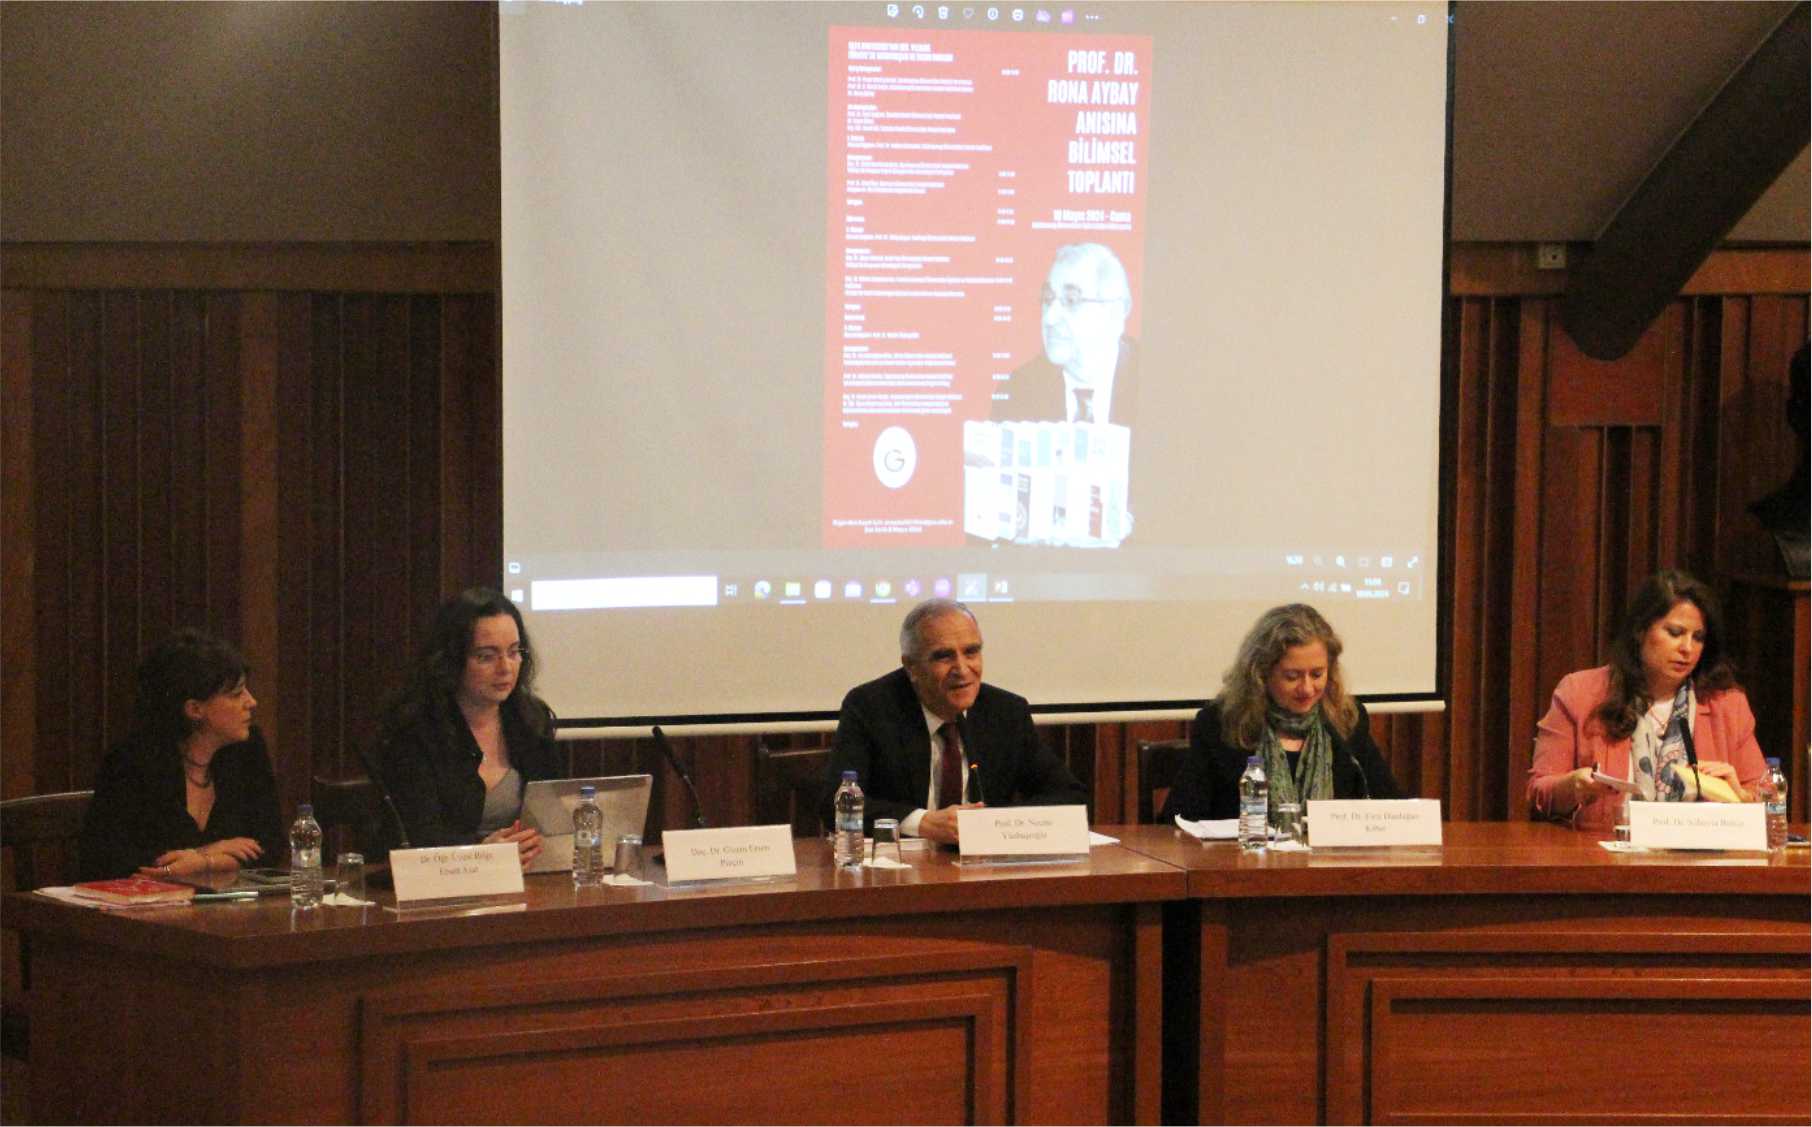 “1924 Anayasası’nın 100. Yılında Türkiye’de Vatandaşlık ve İnsan Hakları” konferansı ile Prof. Dr. Rona Aybay’ı andık haber görseli